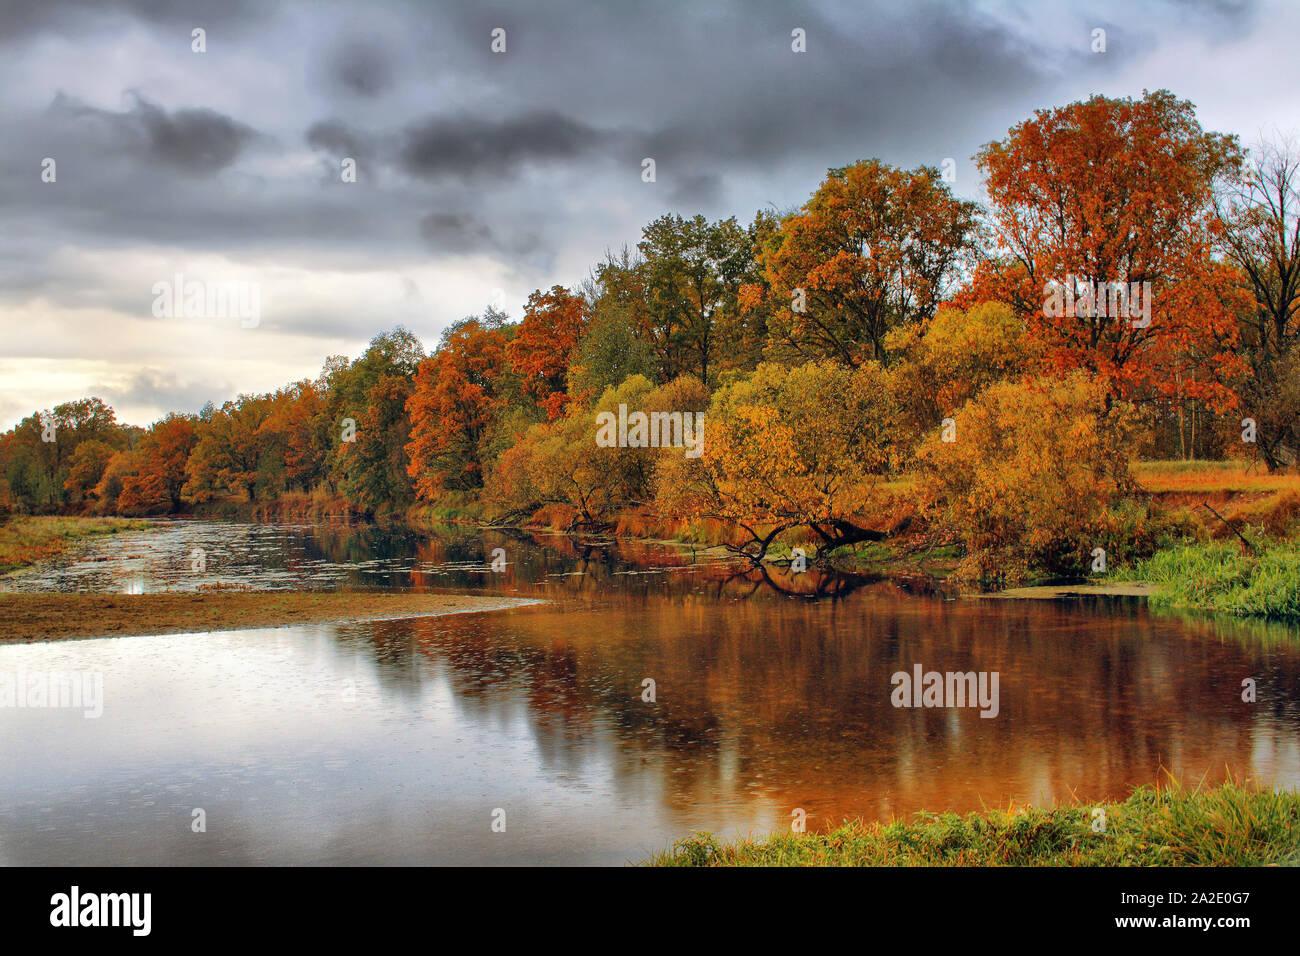 Regen und Wolken am Himmel über misty Herbst Wald. Orange Bäume im Herbst am Flussufer. Goldener Herbst Landschaft. Bunte Bäume im Wald. Stockfoto